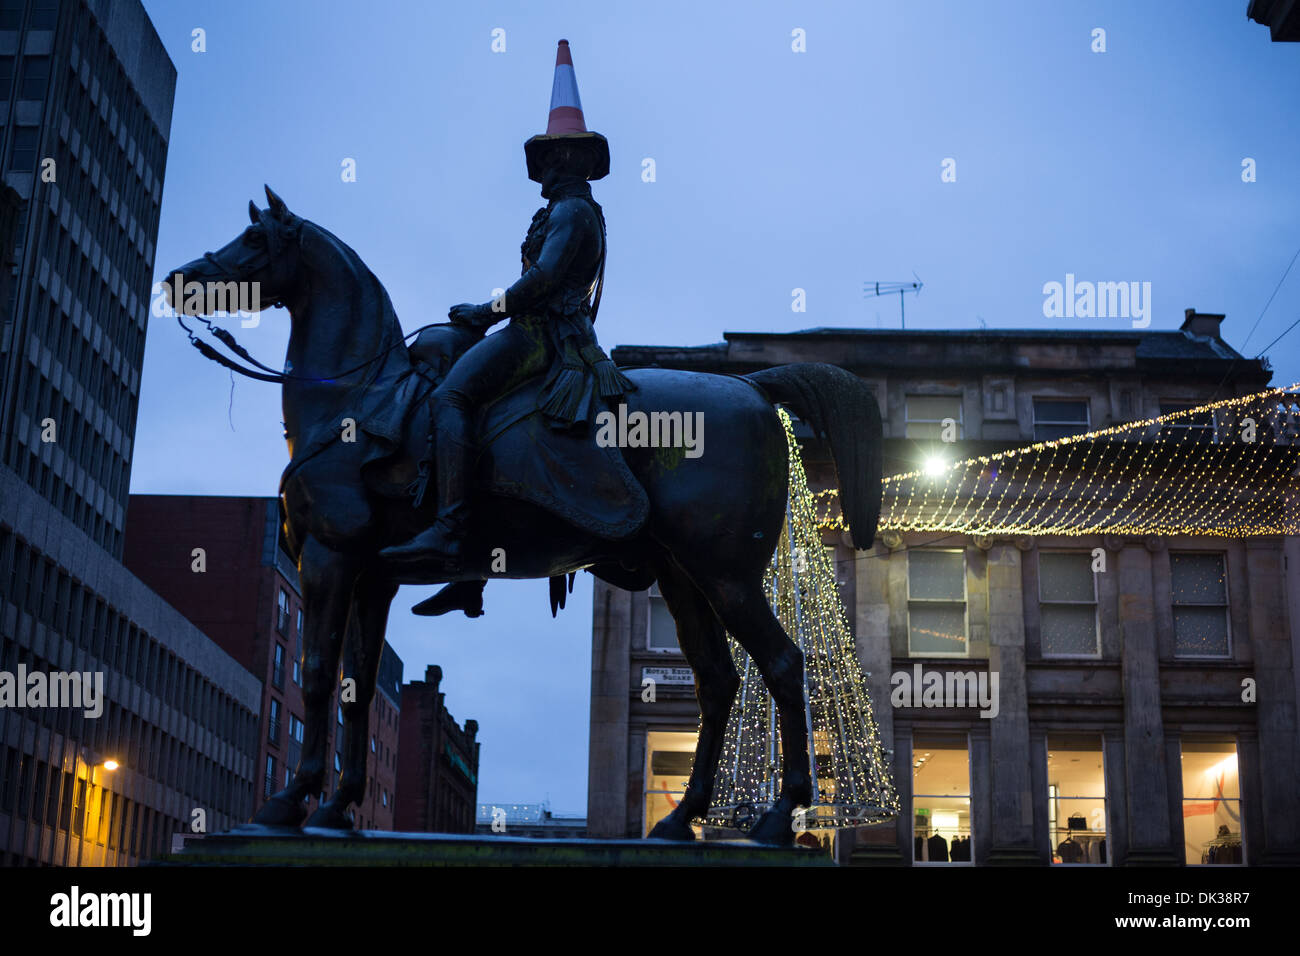 Le duc de Wellington statue qui porte un cône de police sur sa tête, Glasgow, Ecosse. Banque D'Images